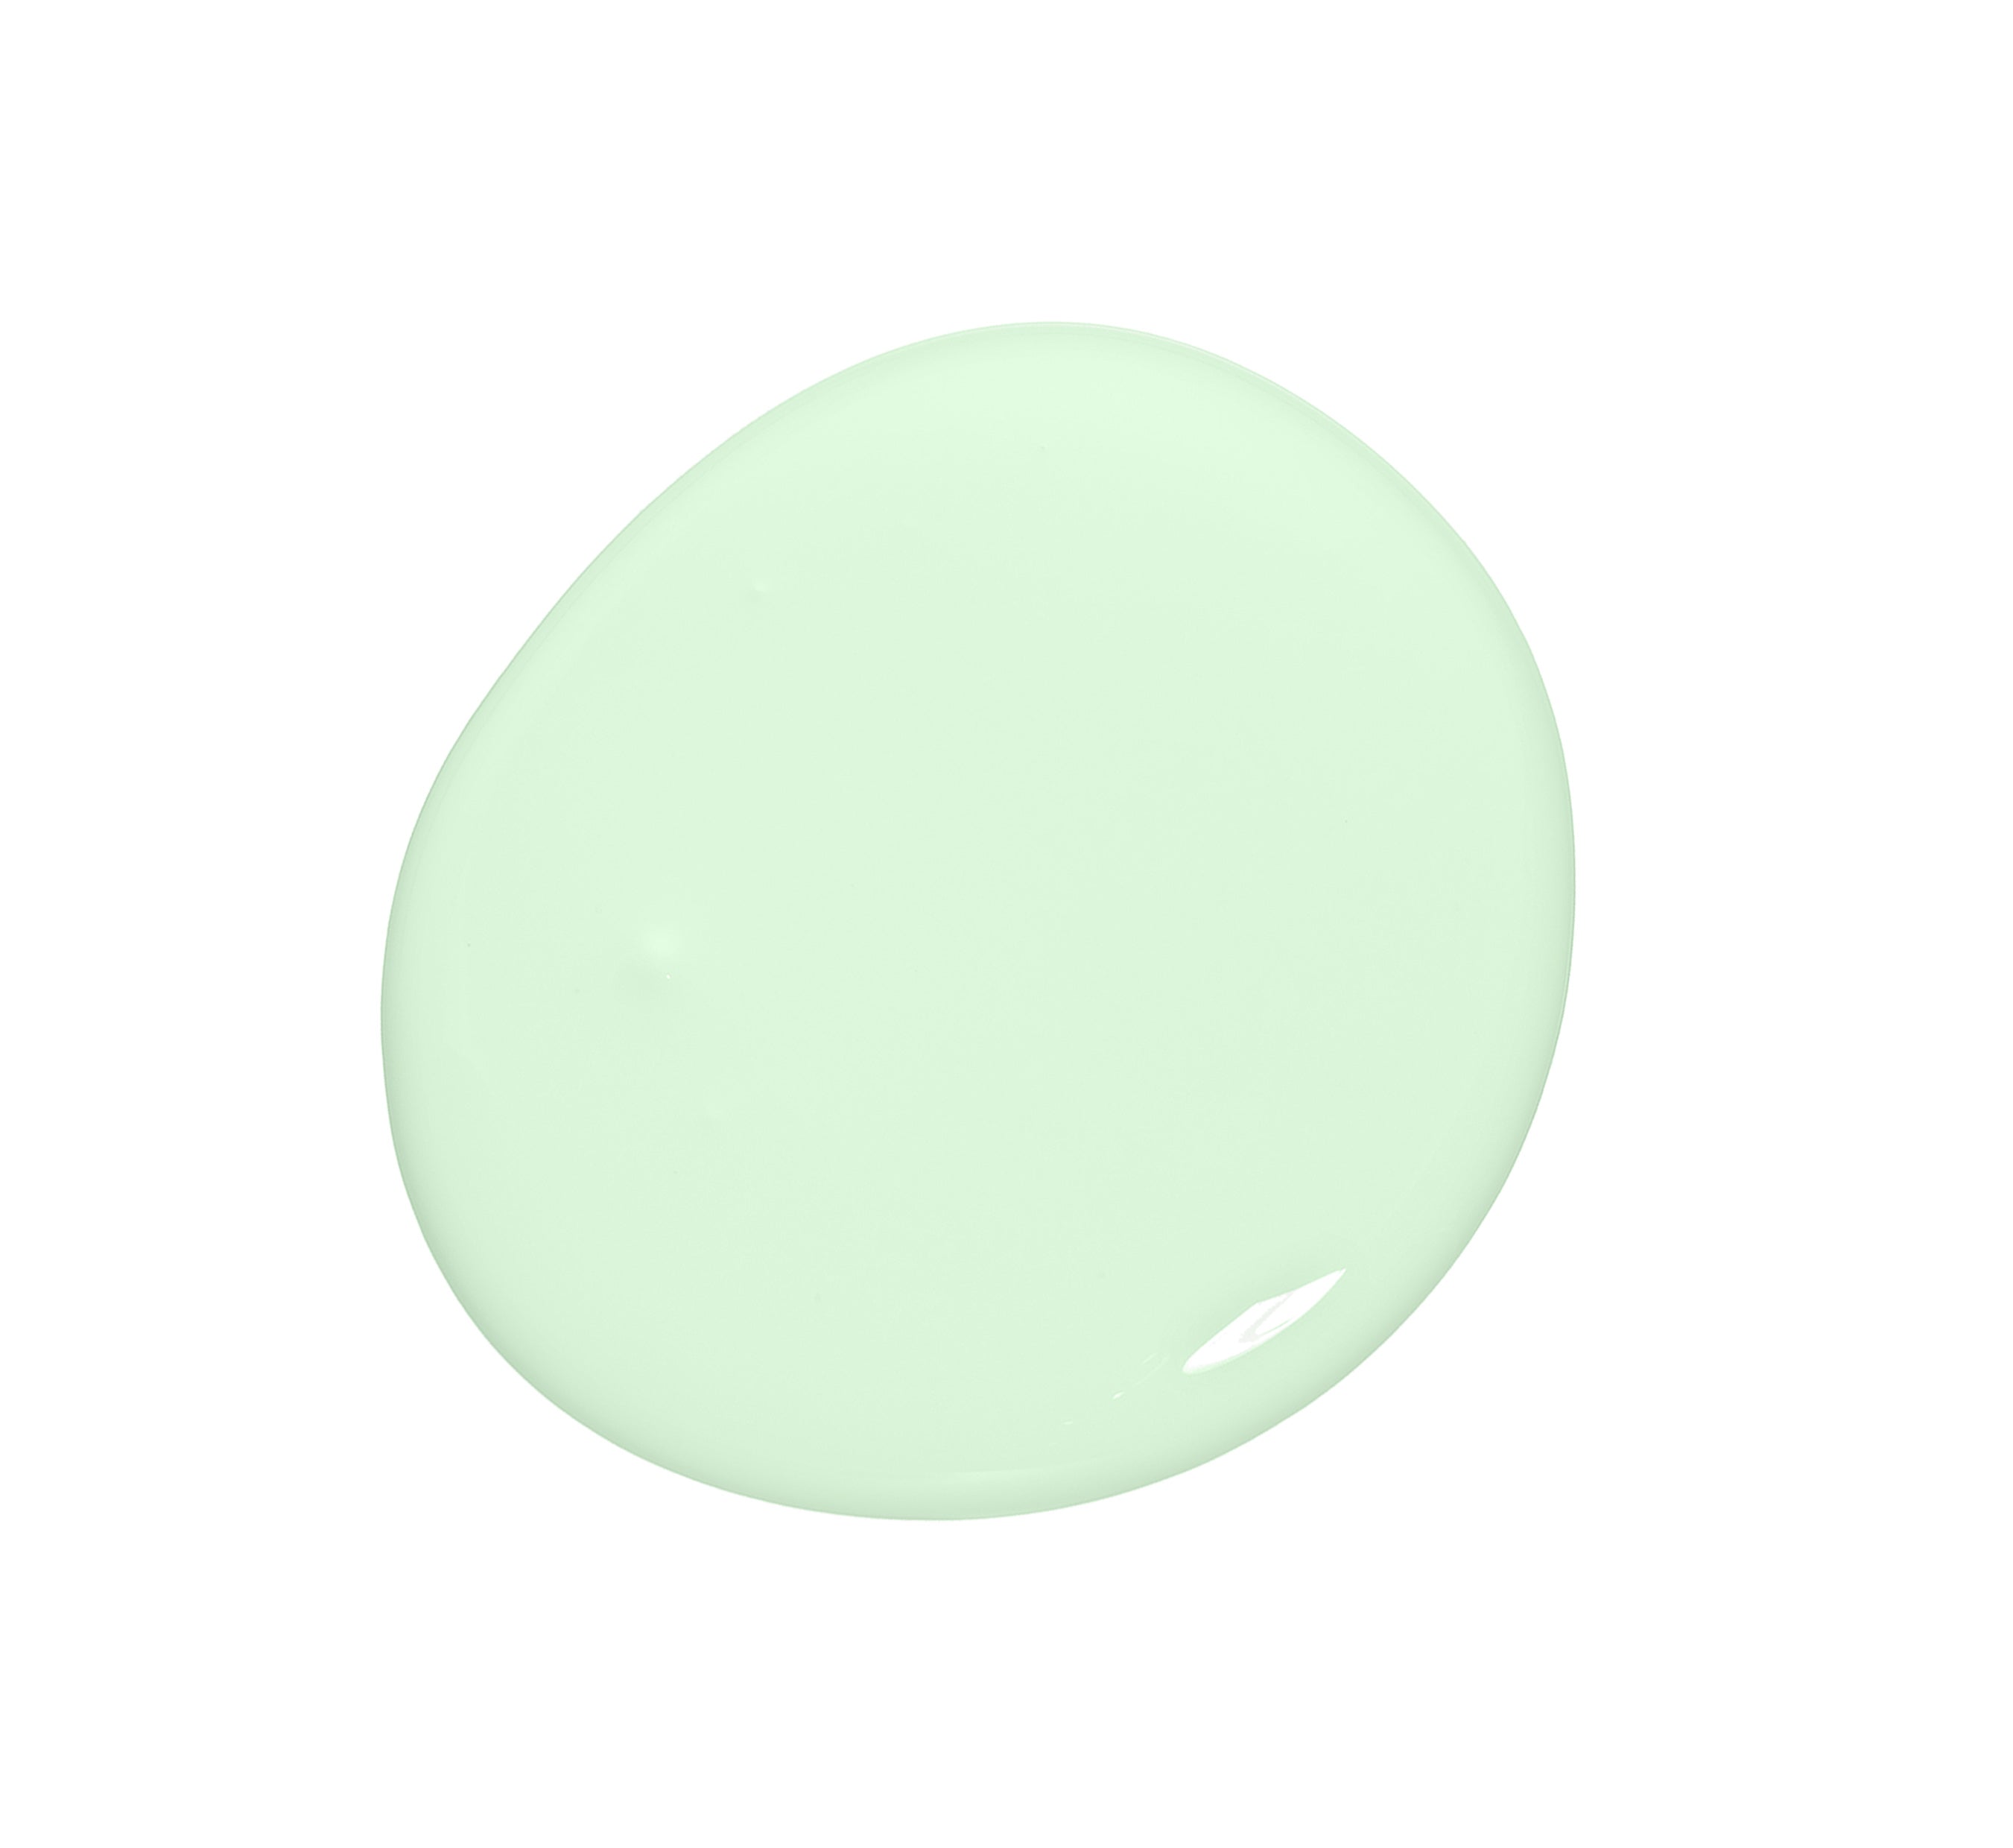 Graceful Mint - Colourtrend Paints